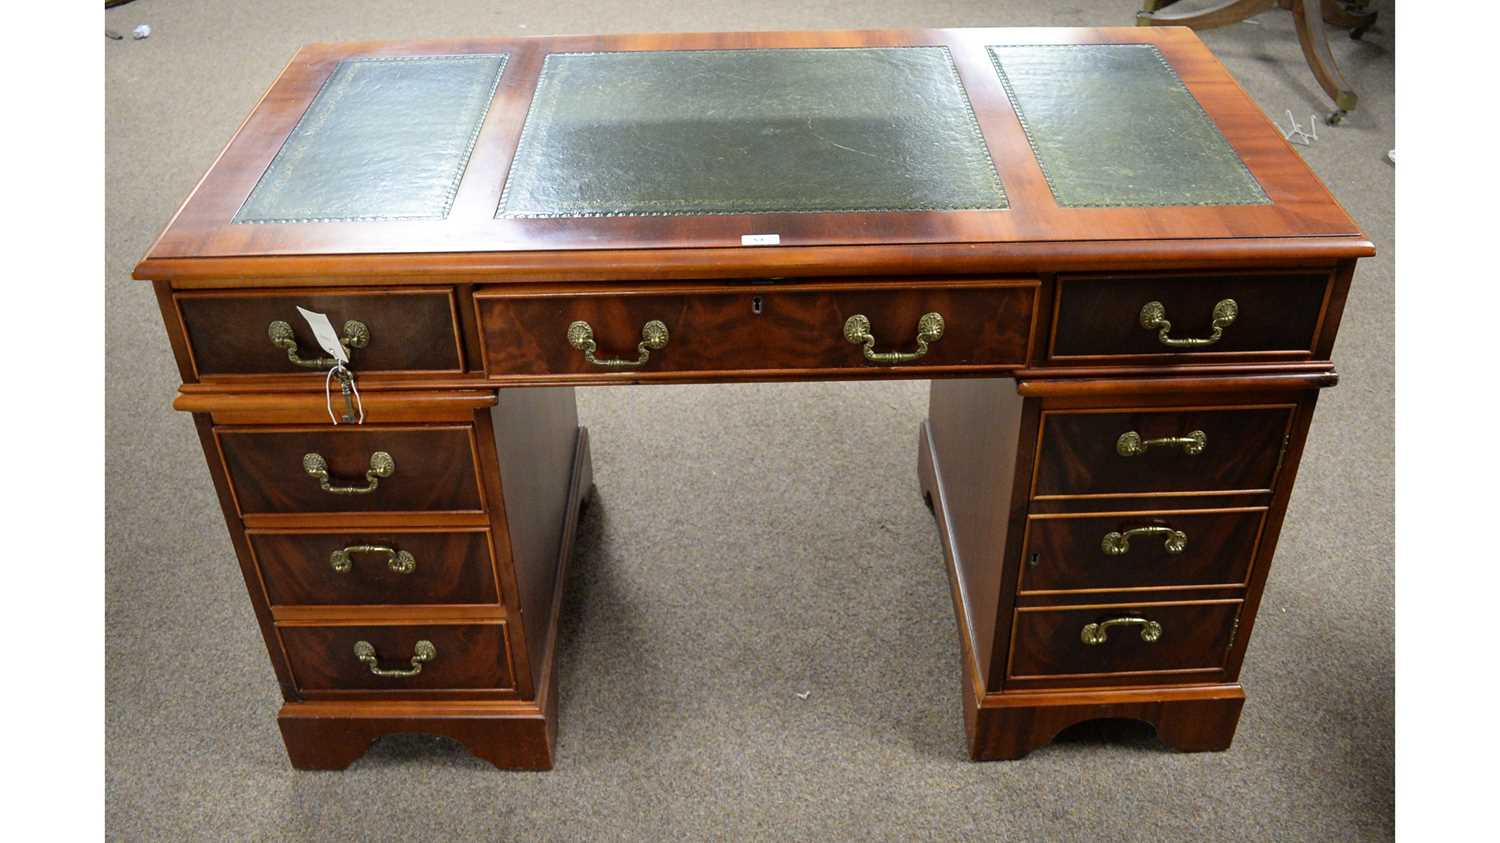 A reproduction mahogany twin-pedestal desk.